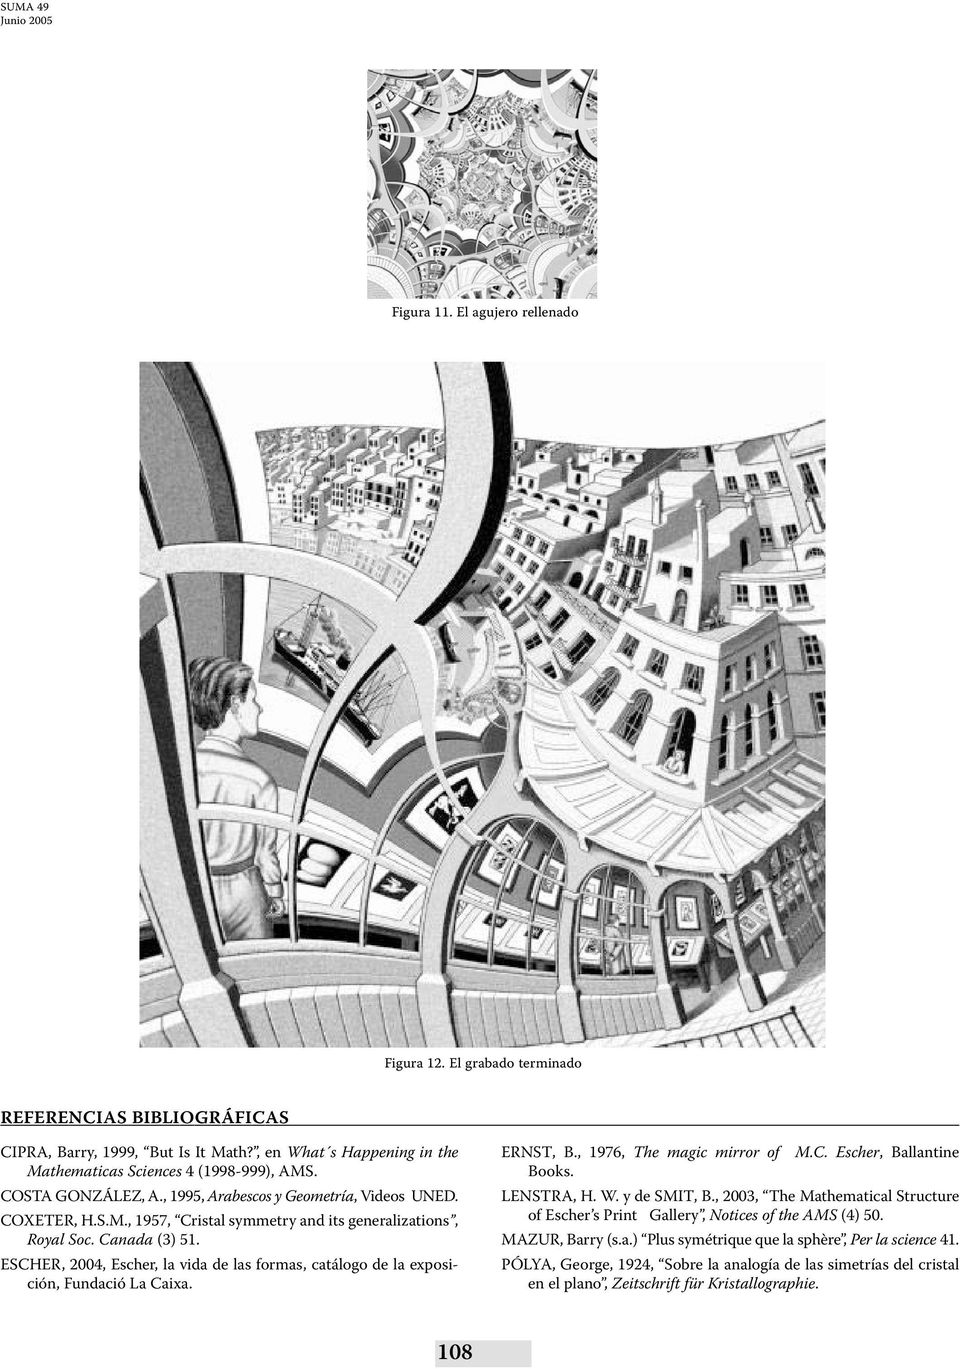 ESCHER, 2004, Escher, la vida de las formas, catálogo de la exposición, Fundació La Caixa. ERNST, B., 1976, The magic mirror of M.C. Escher, Ballantine Books. LENSTRA, H. W. y de SMIT, B.